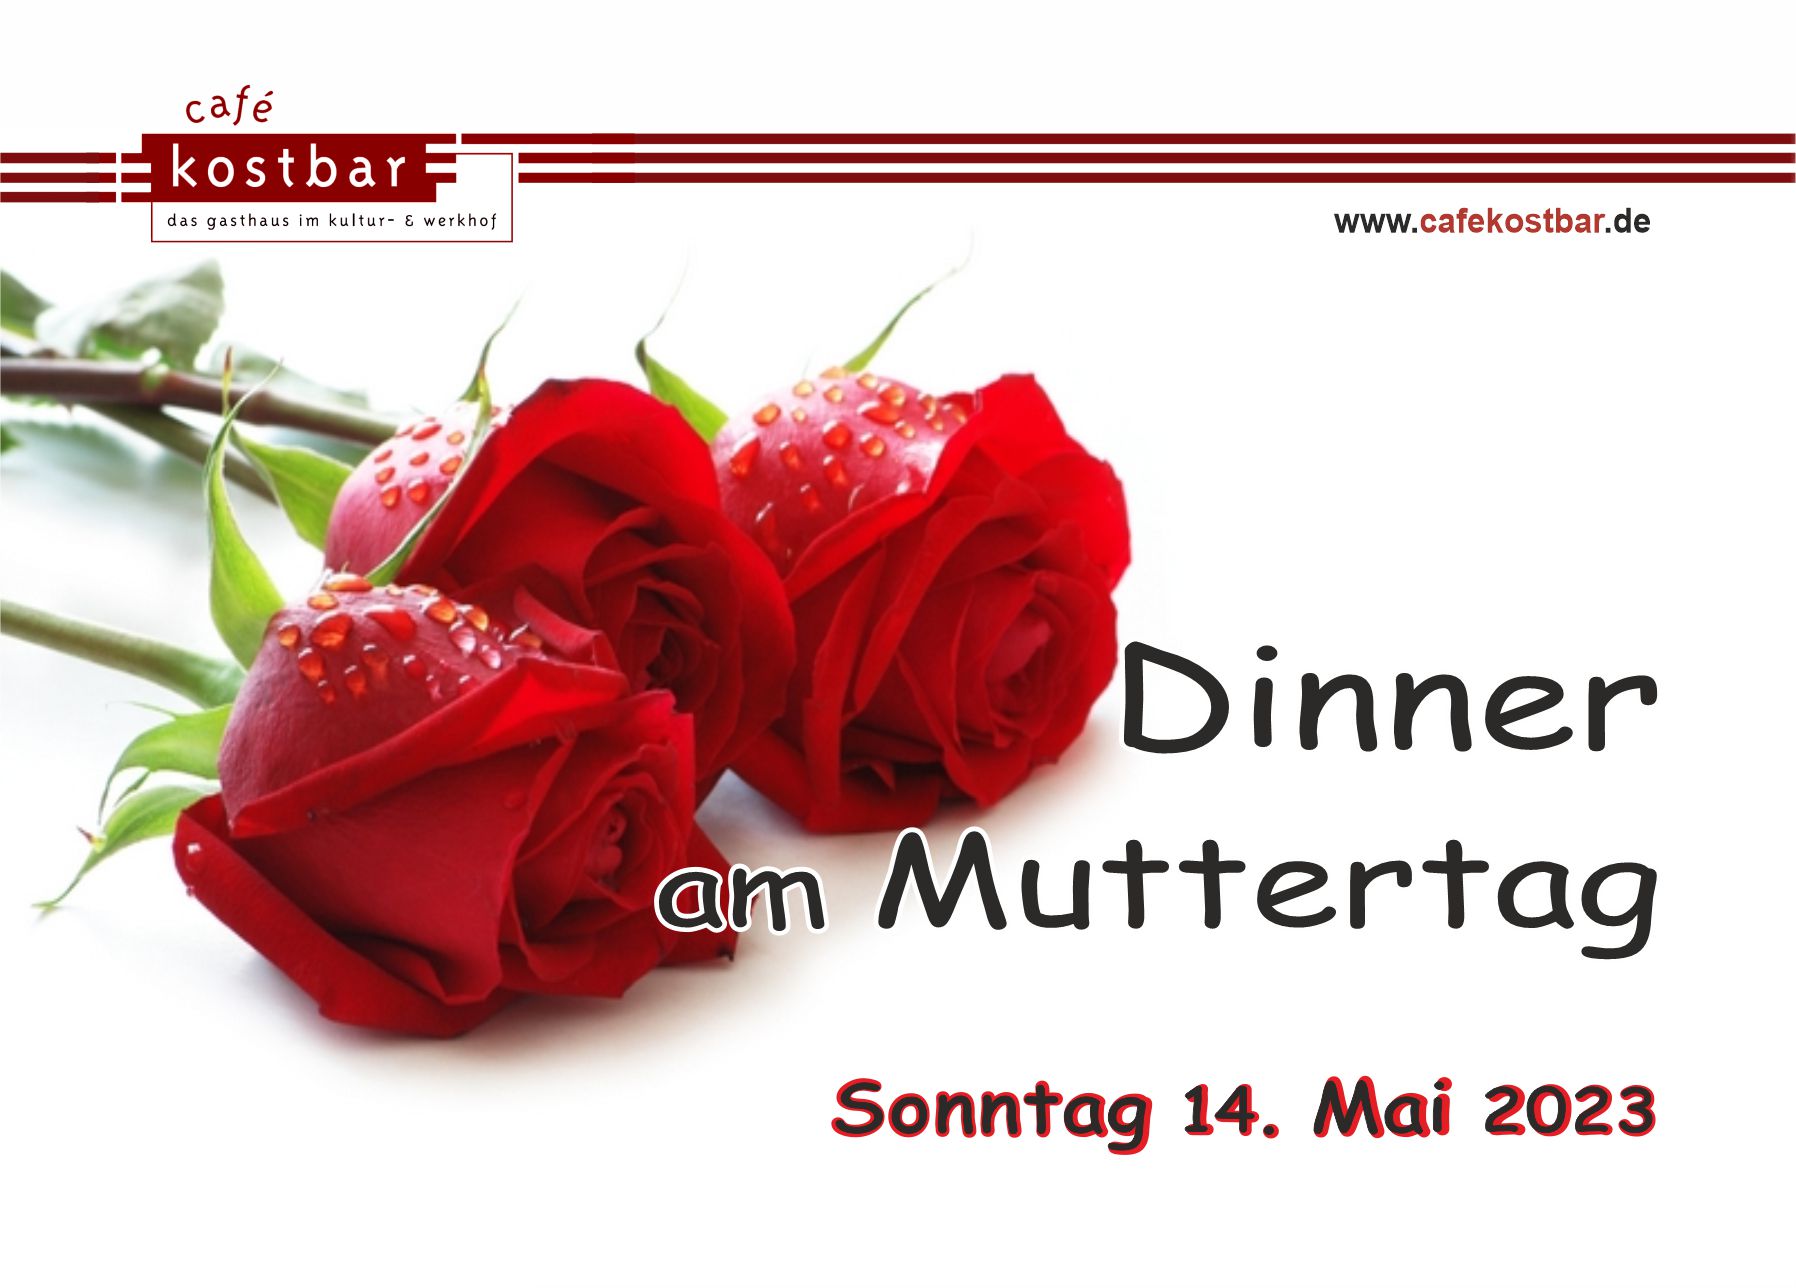 Muttertag 2023 feiern, Dinner im Kreis der Lieben schenken...